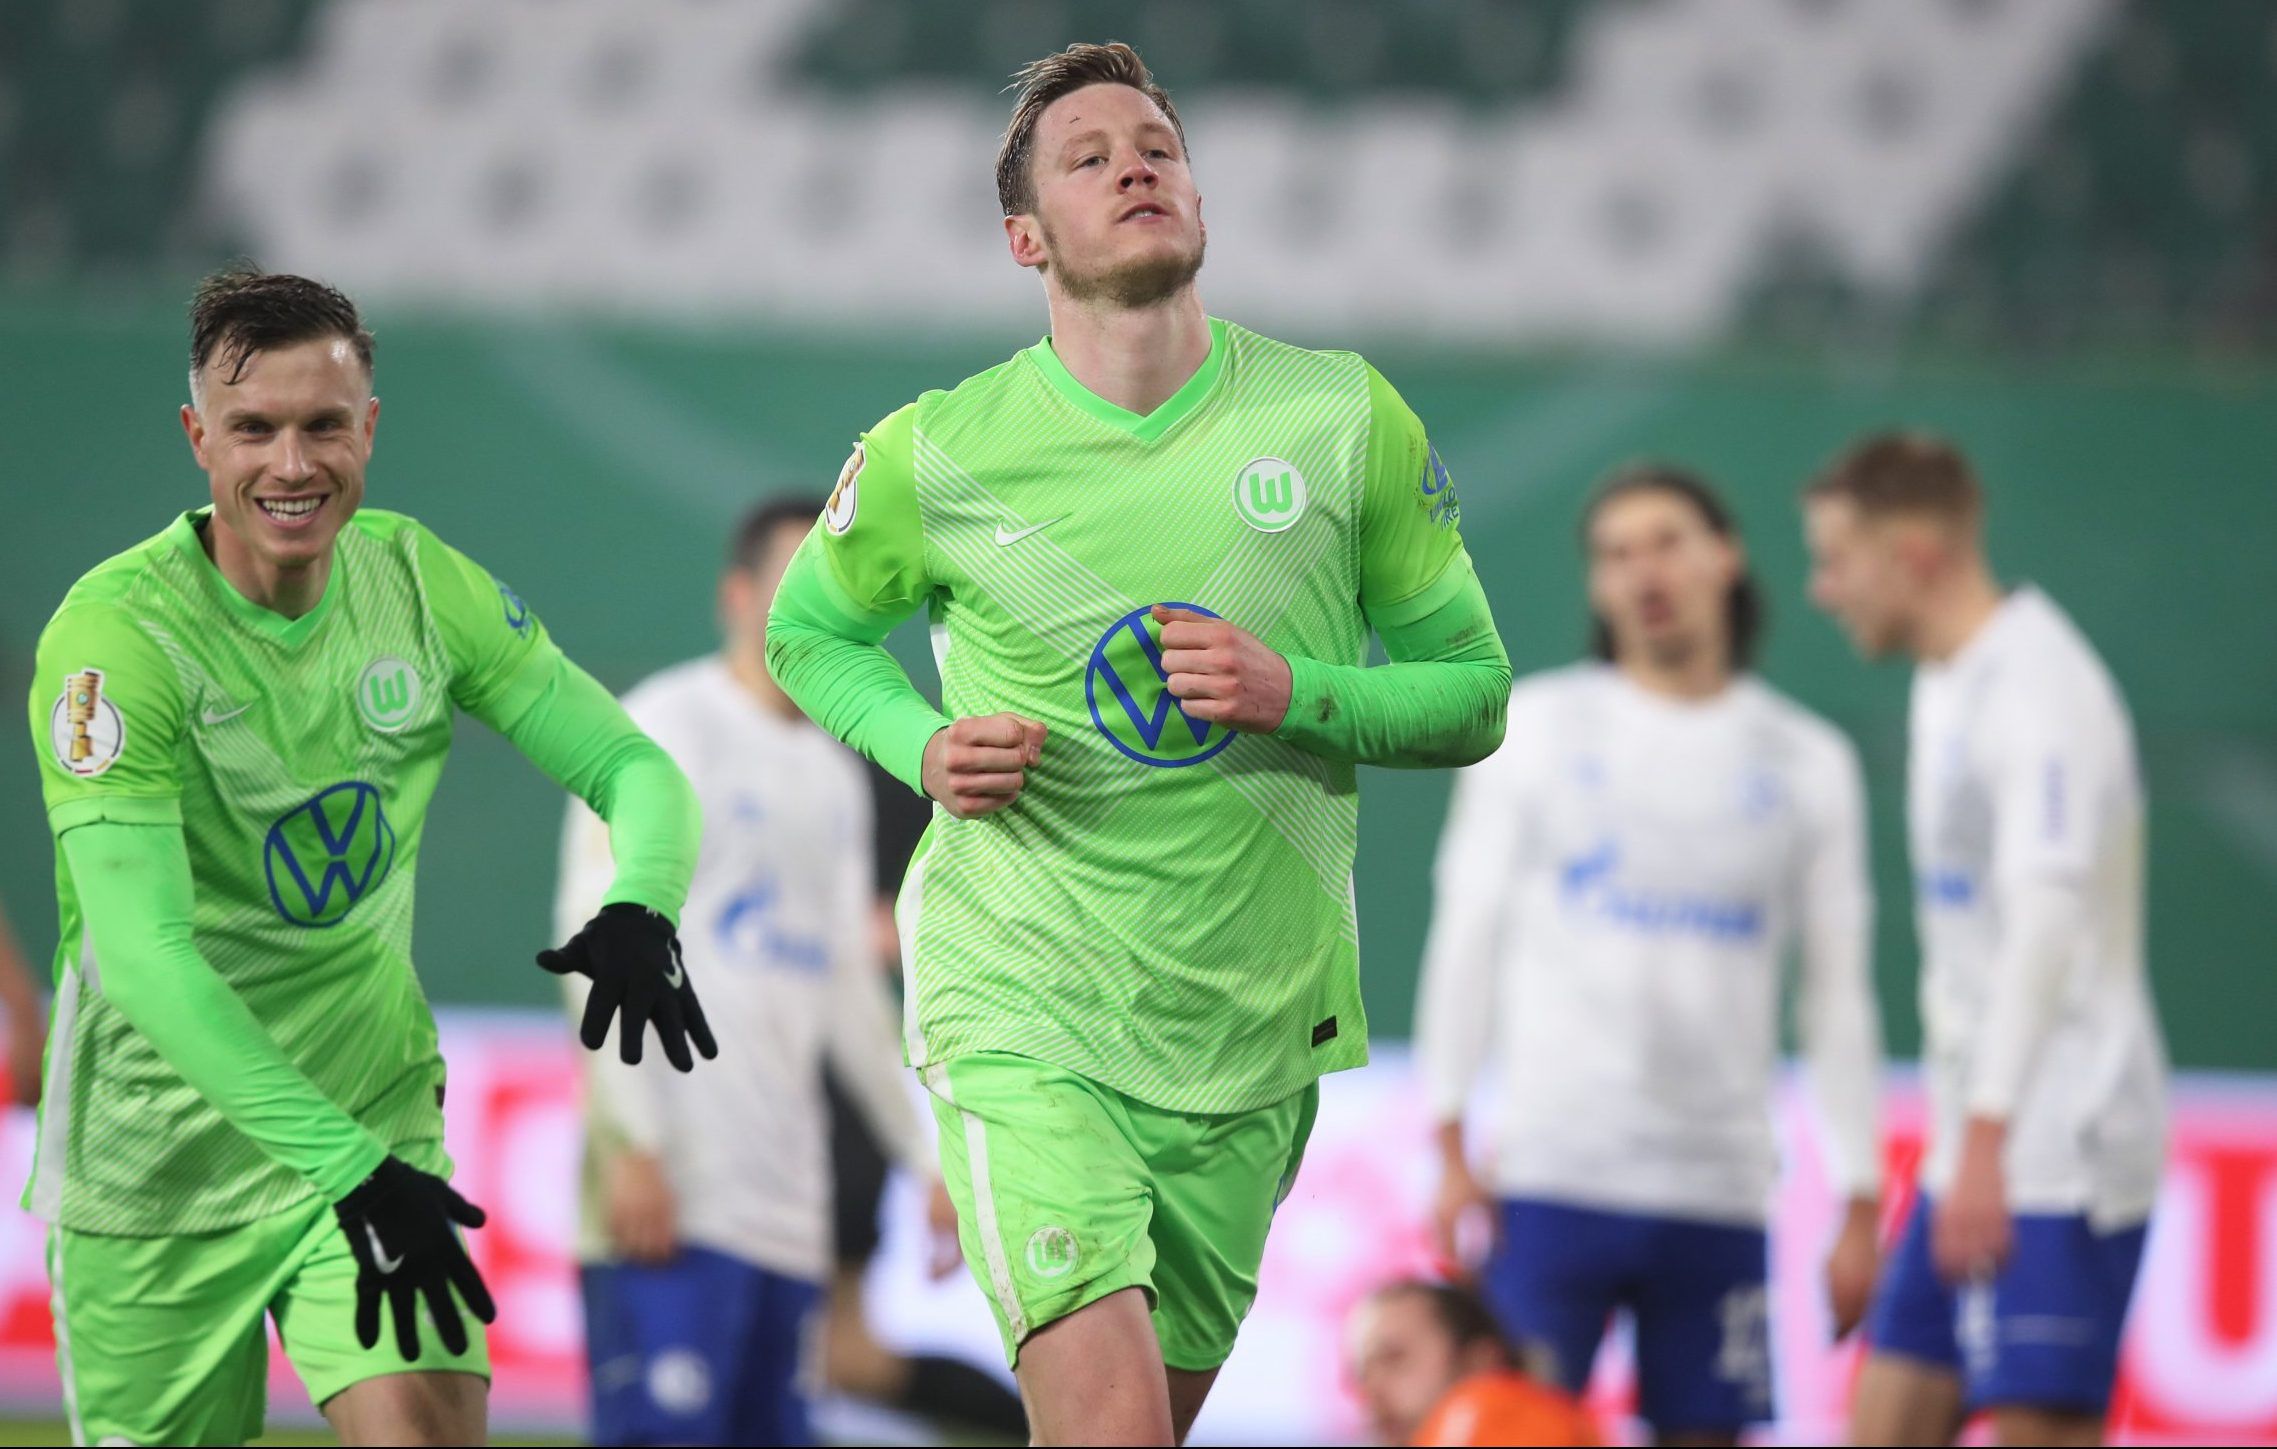 wolfsburg striker wout weghorst celebrates scoring against schalke in the dfb cup